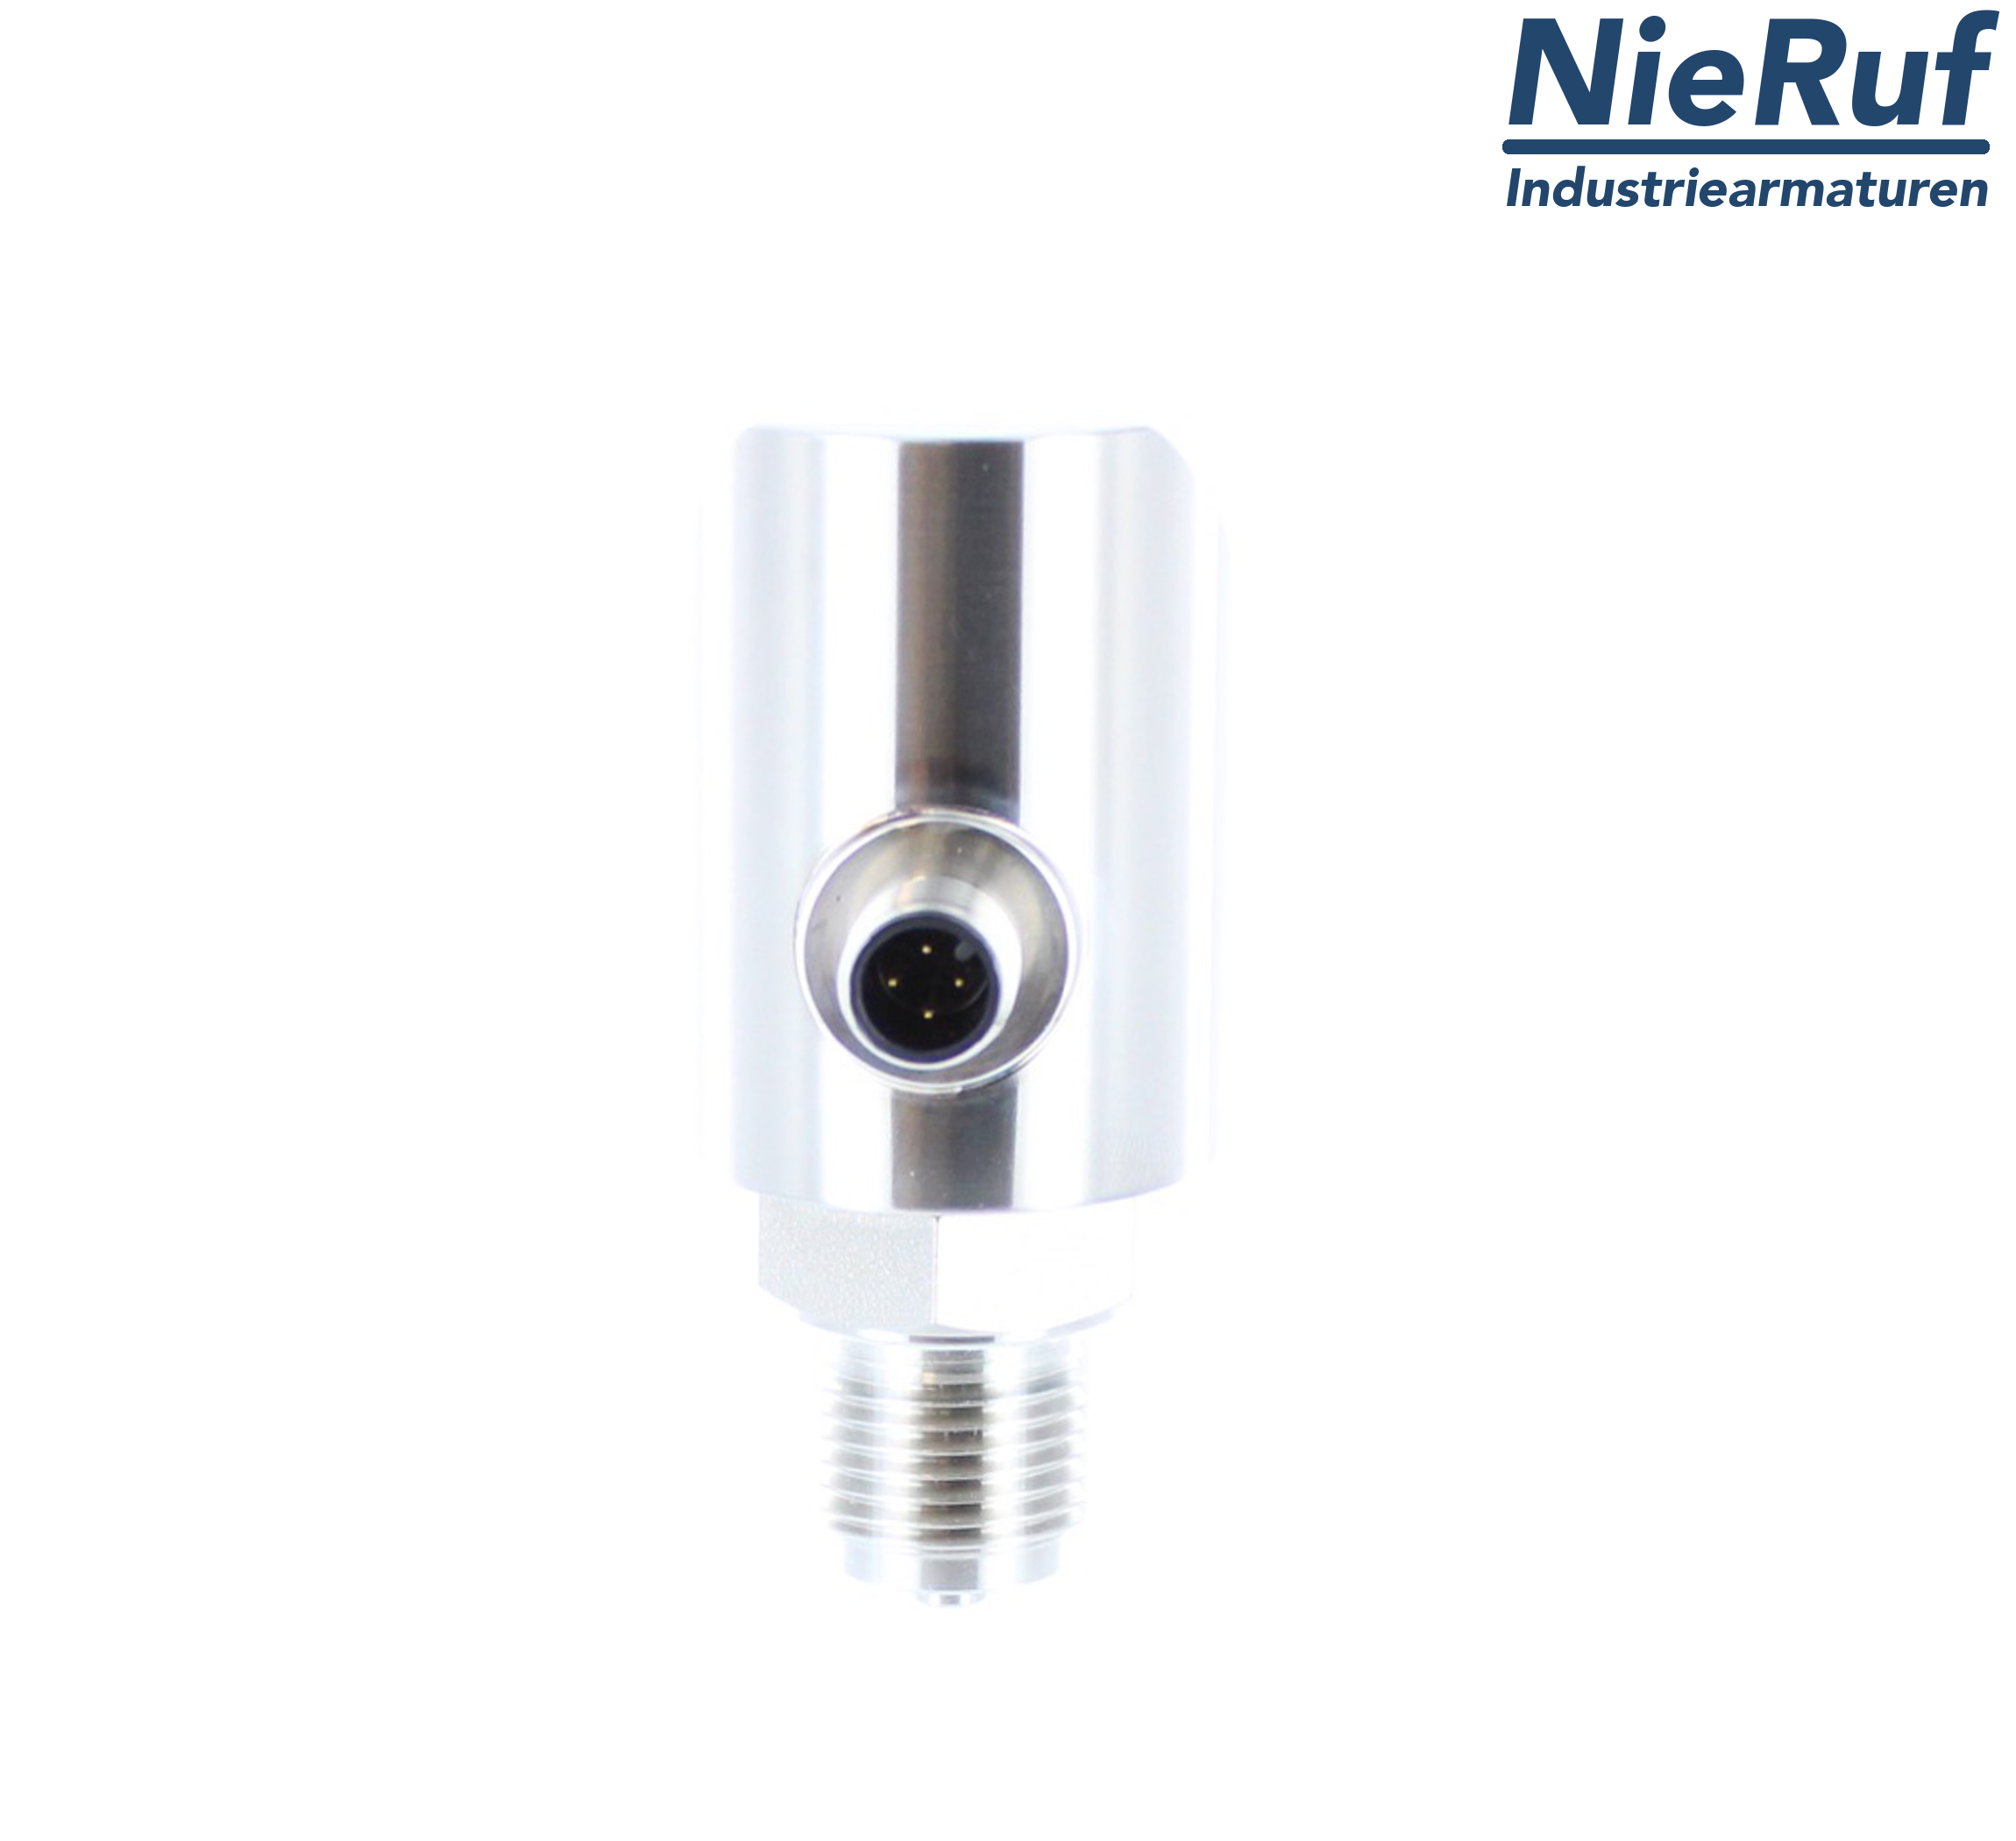 digital pressure sensor G 1/2" B 4-wire: 1xPNP, 1x4 - 20mA, Desina FPM 0,0 - 600,0 bar